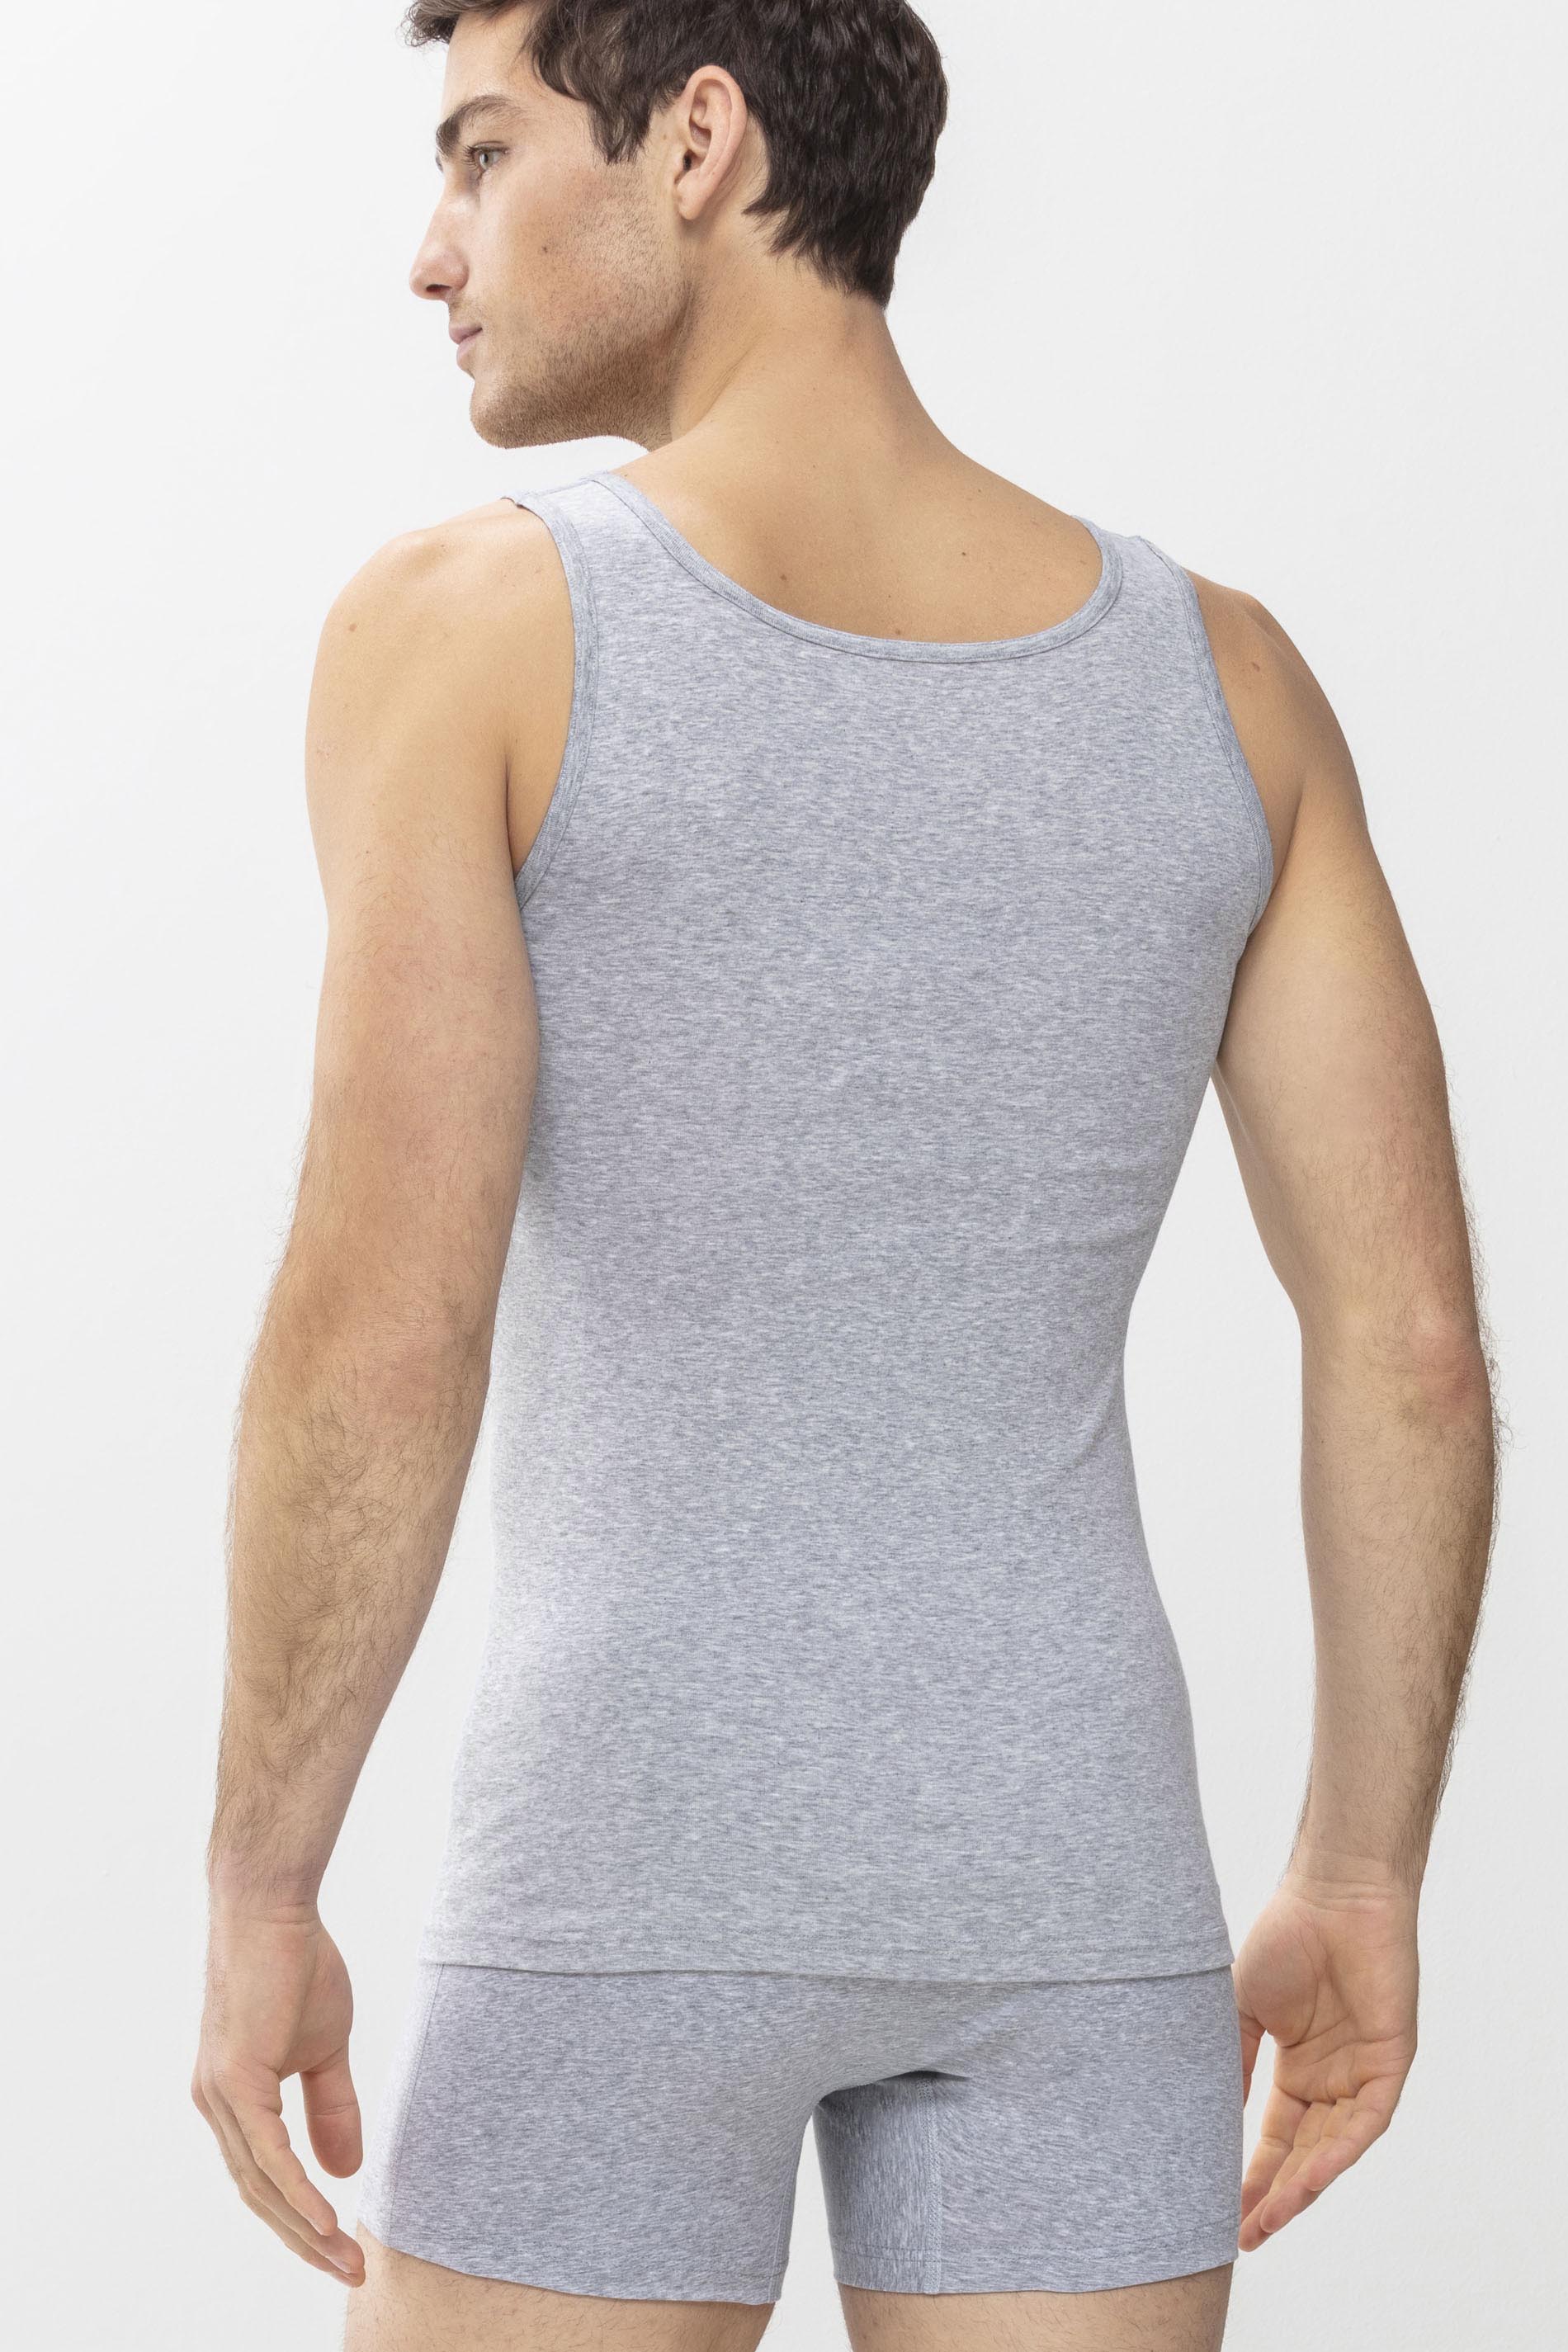 Athletic-Shirt Light Grey Melange Serie Casual Cotton Rückansicht | mey®